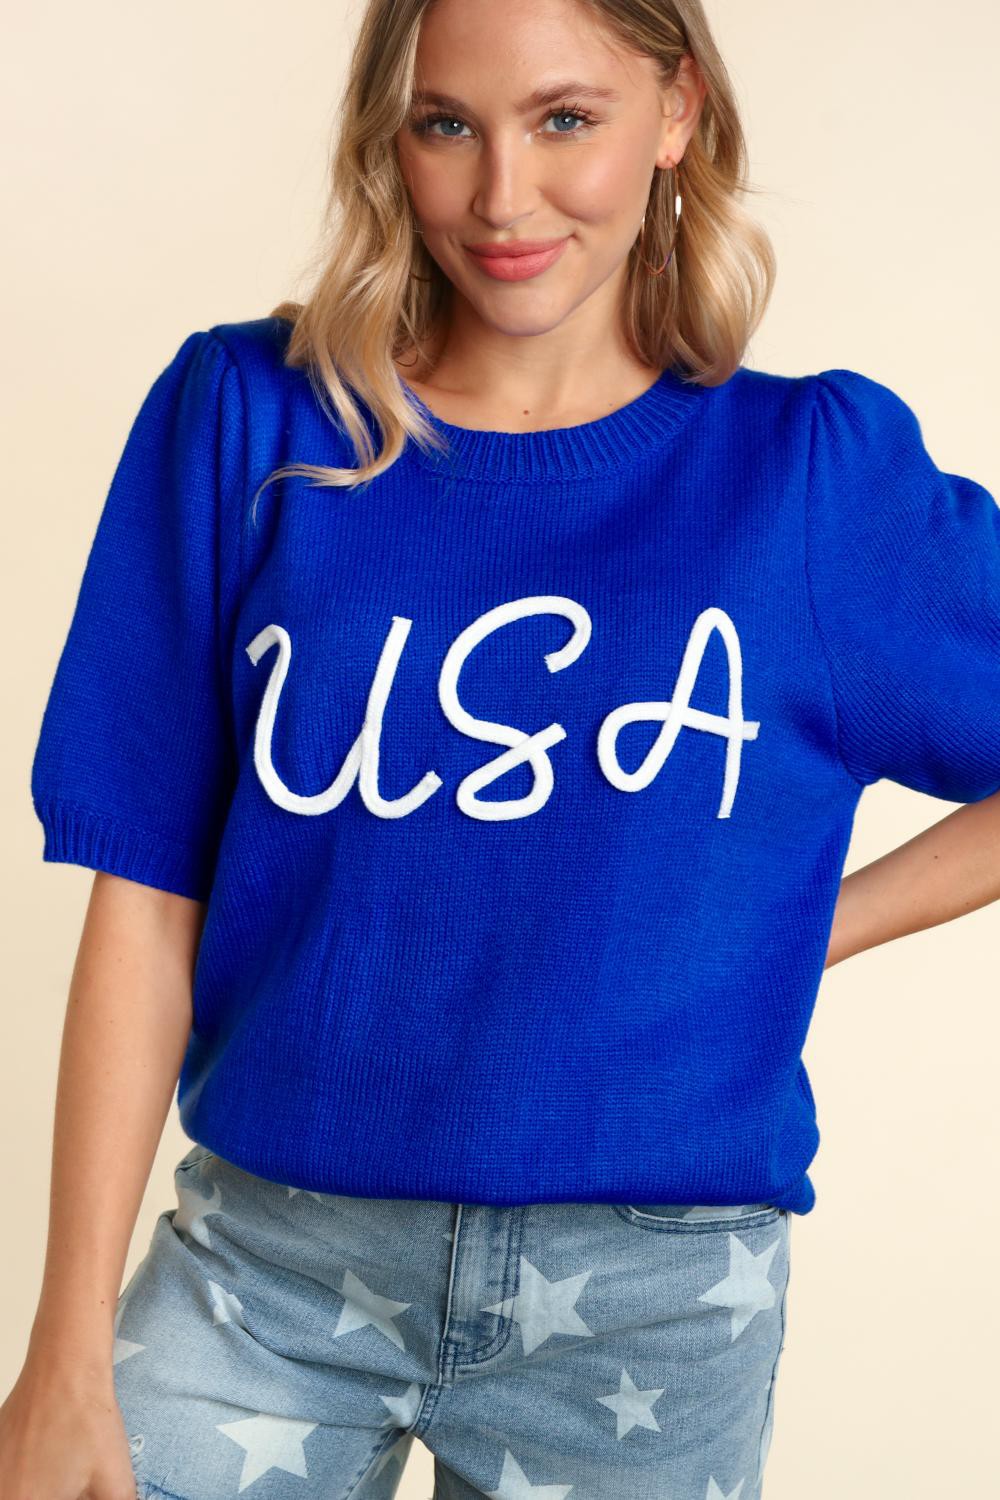 Miss Liberty USA Puff Sleeve Sweater